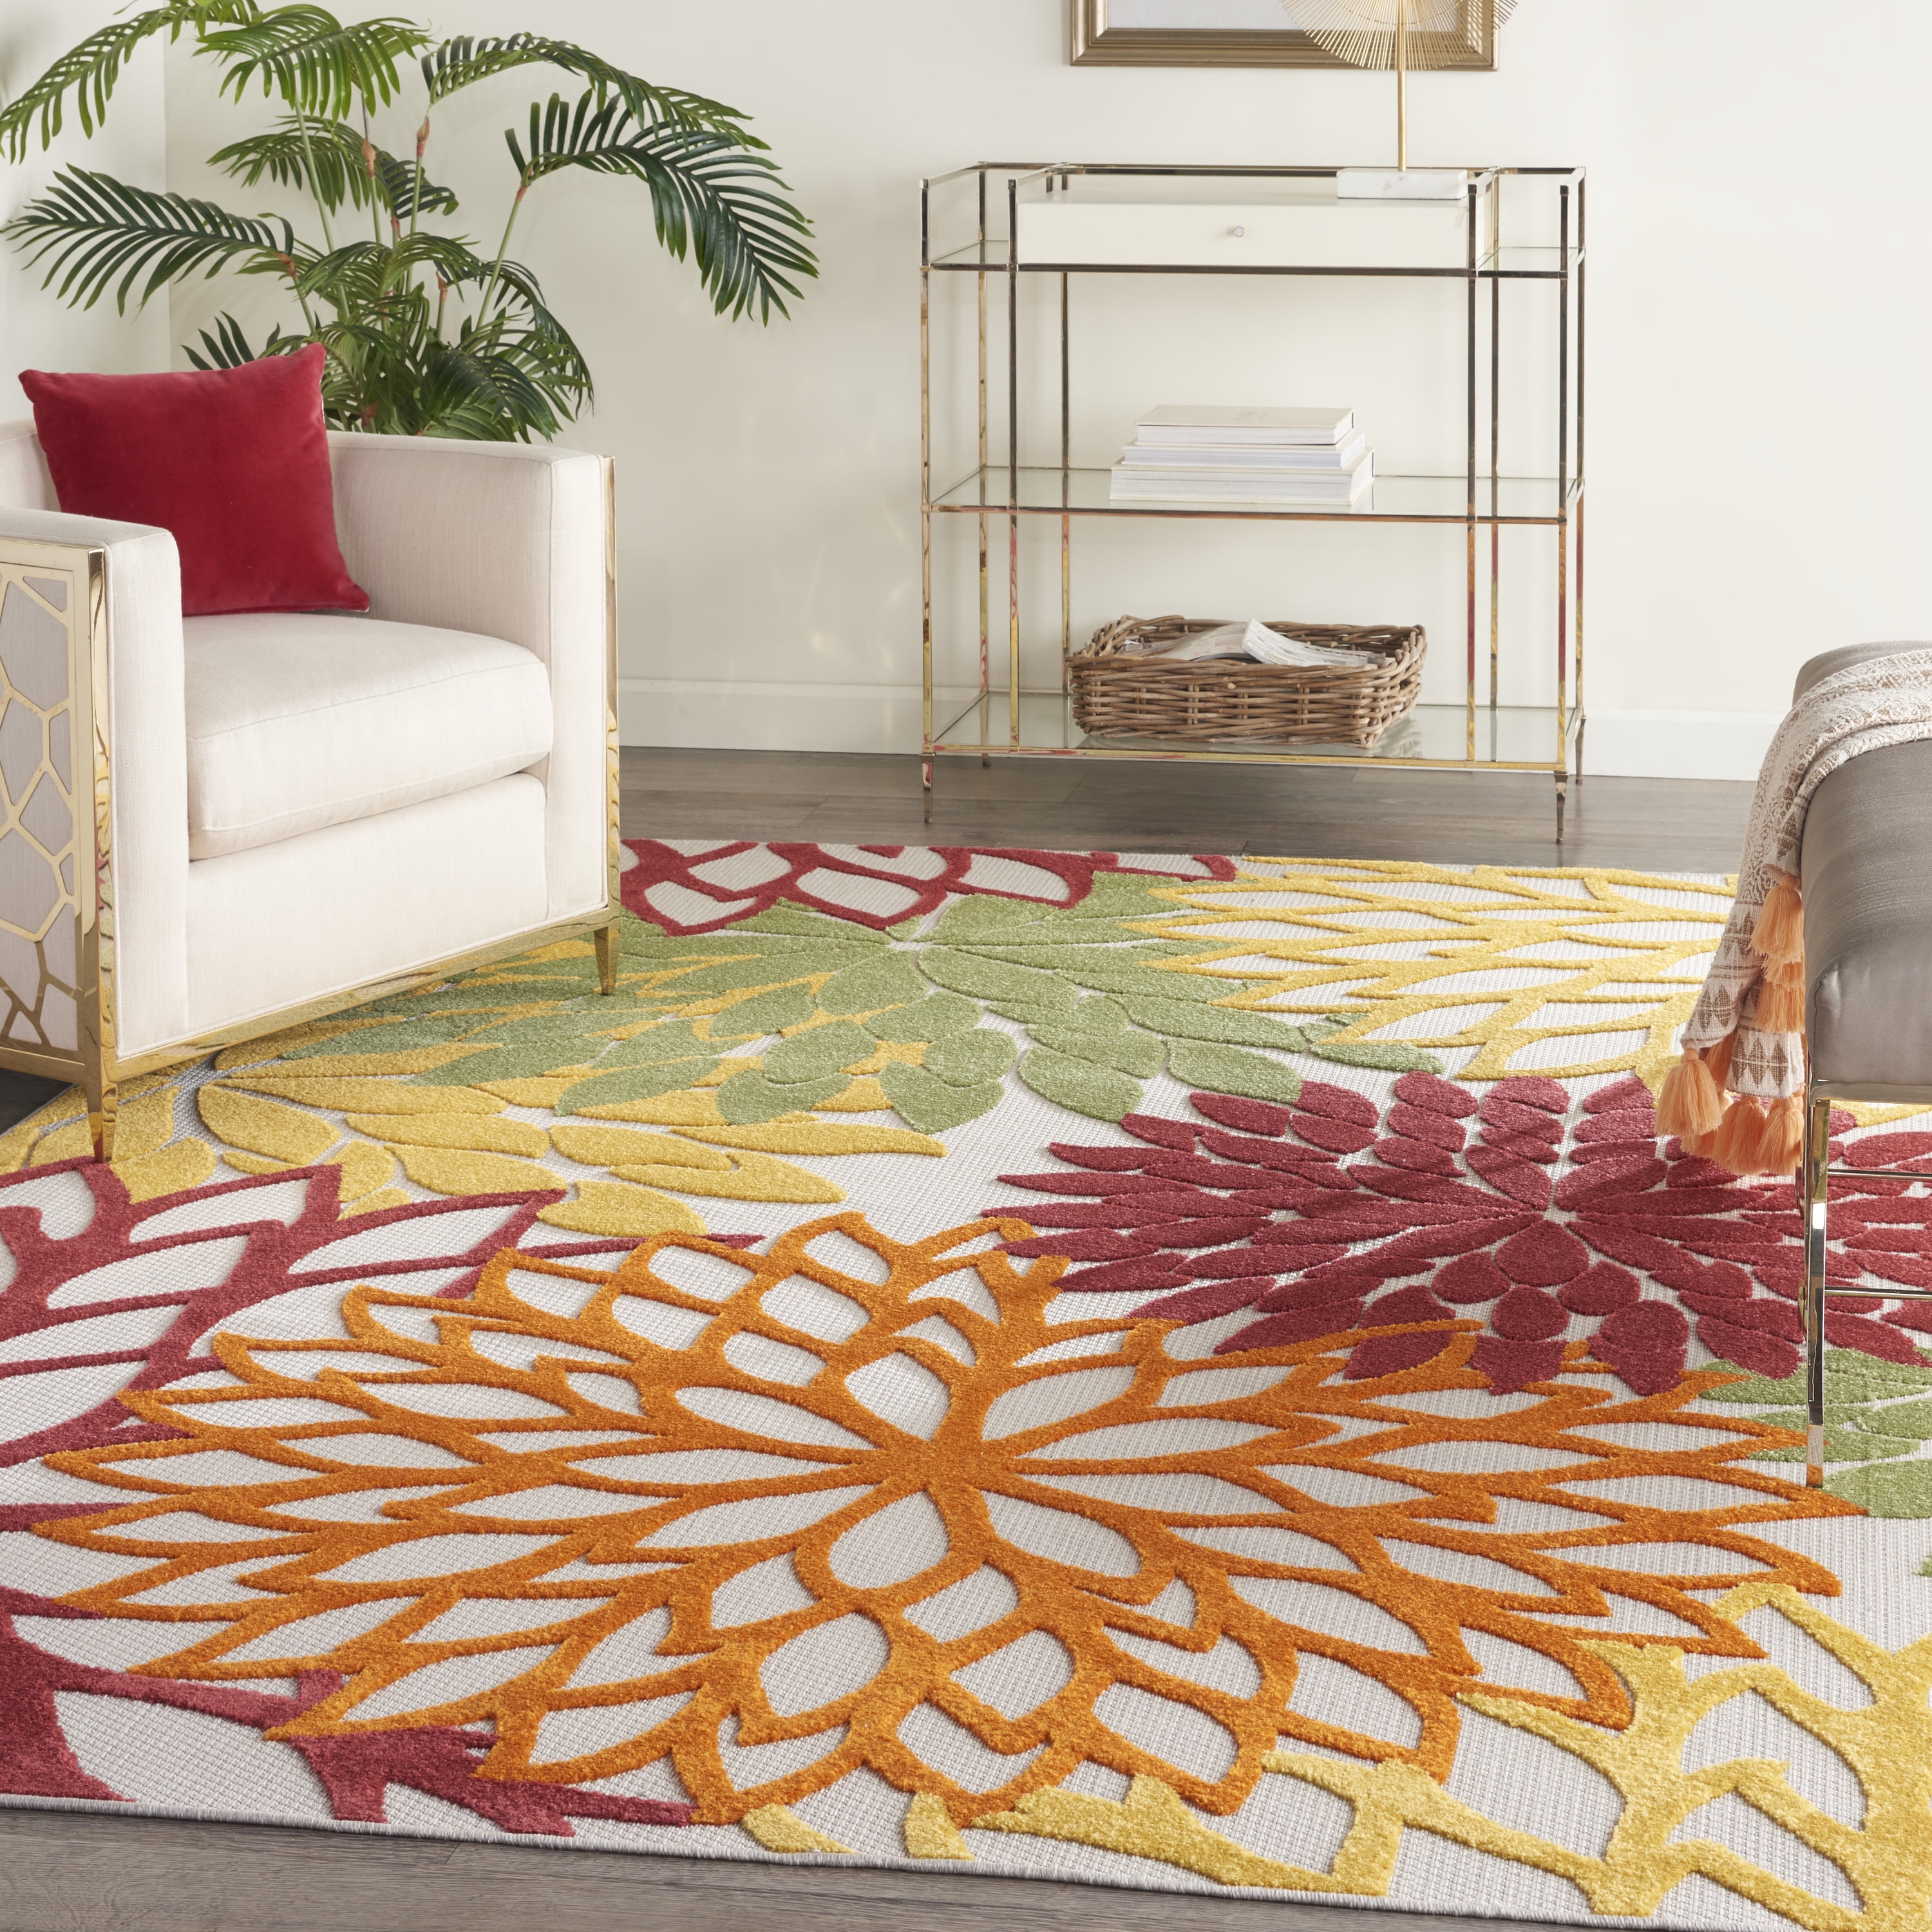 Mandala Multi Area Rug Round Carpet Patio Deck Porch Accent Floor Home Decor Mat 